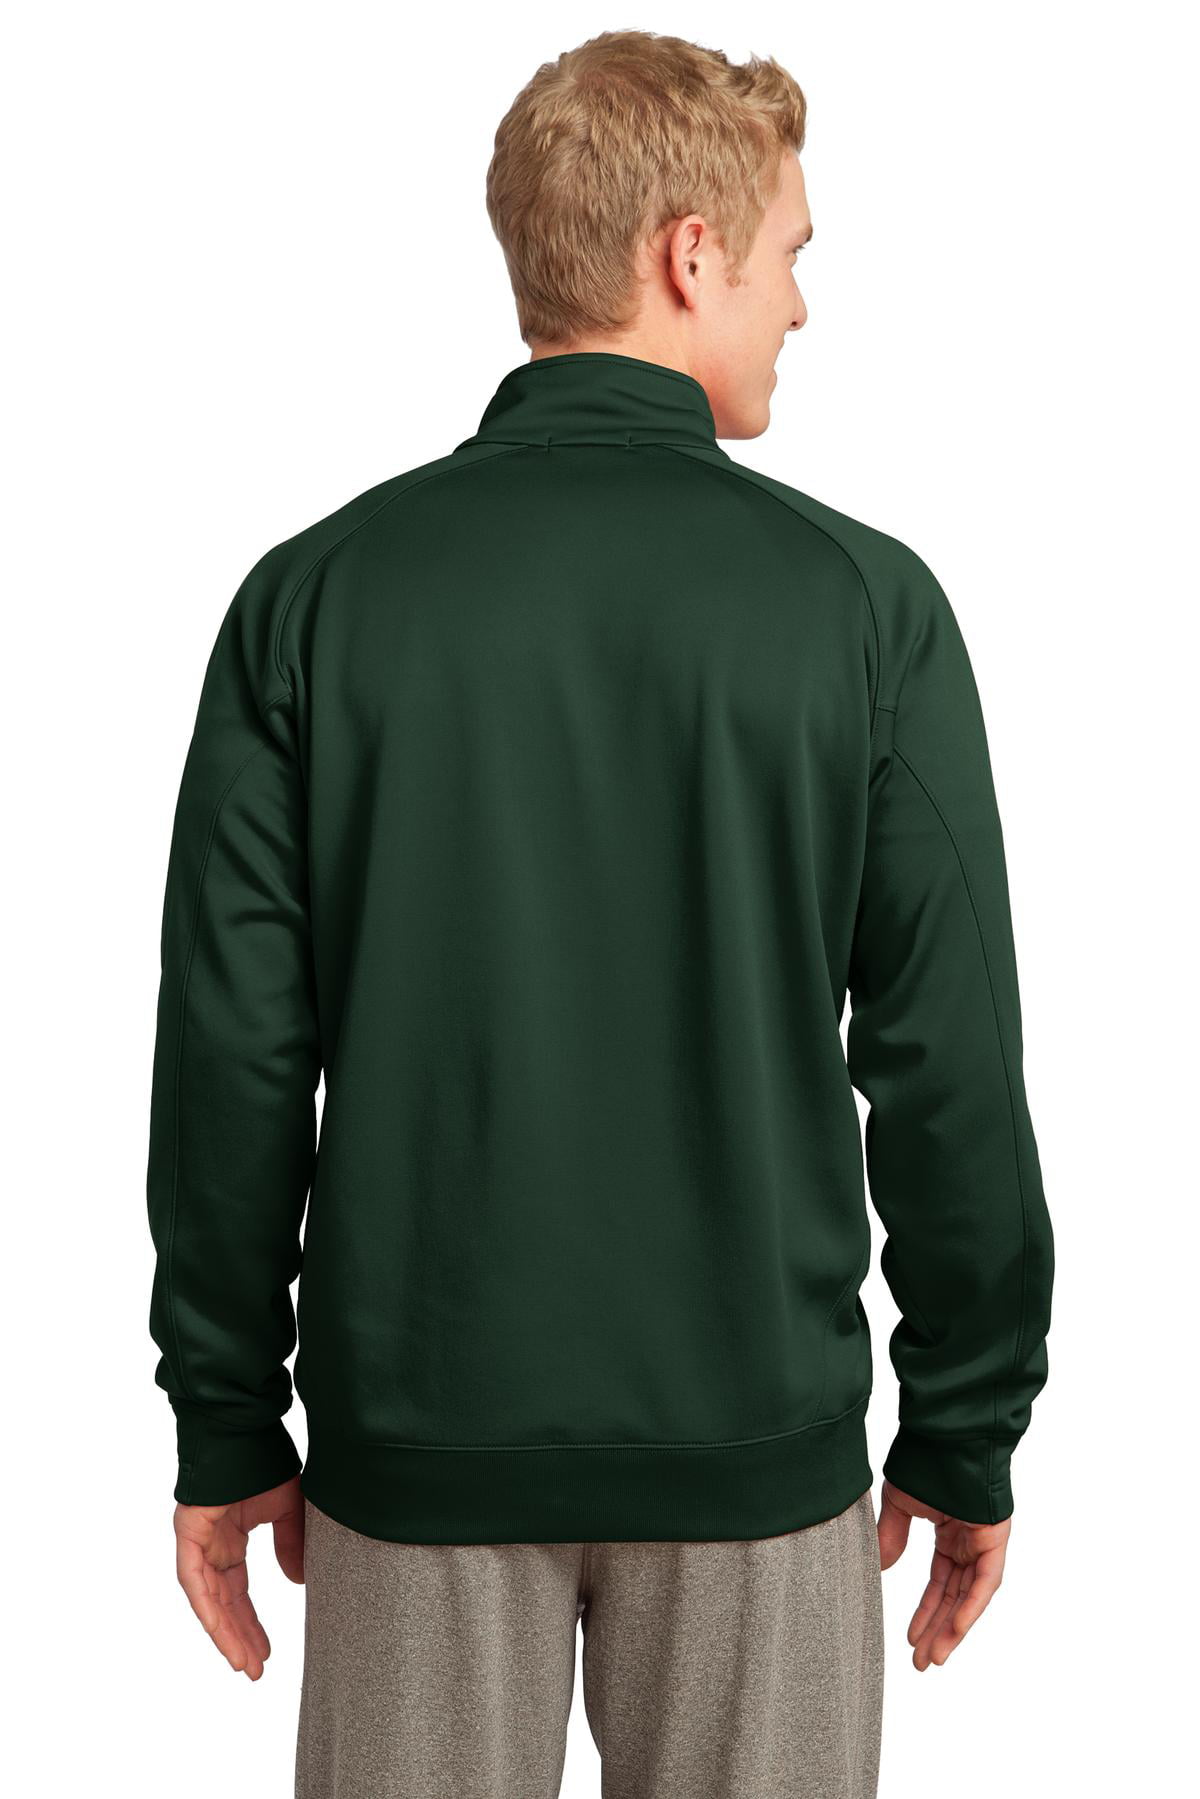 Sport-Tek Tech Fleece 1/4 Zip Pullover-S (Forest Green) - Walmart.com